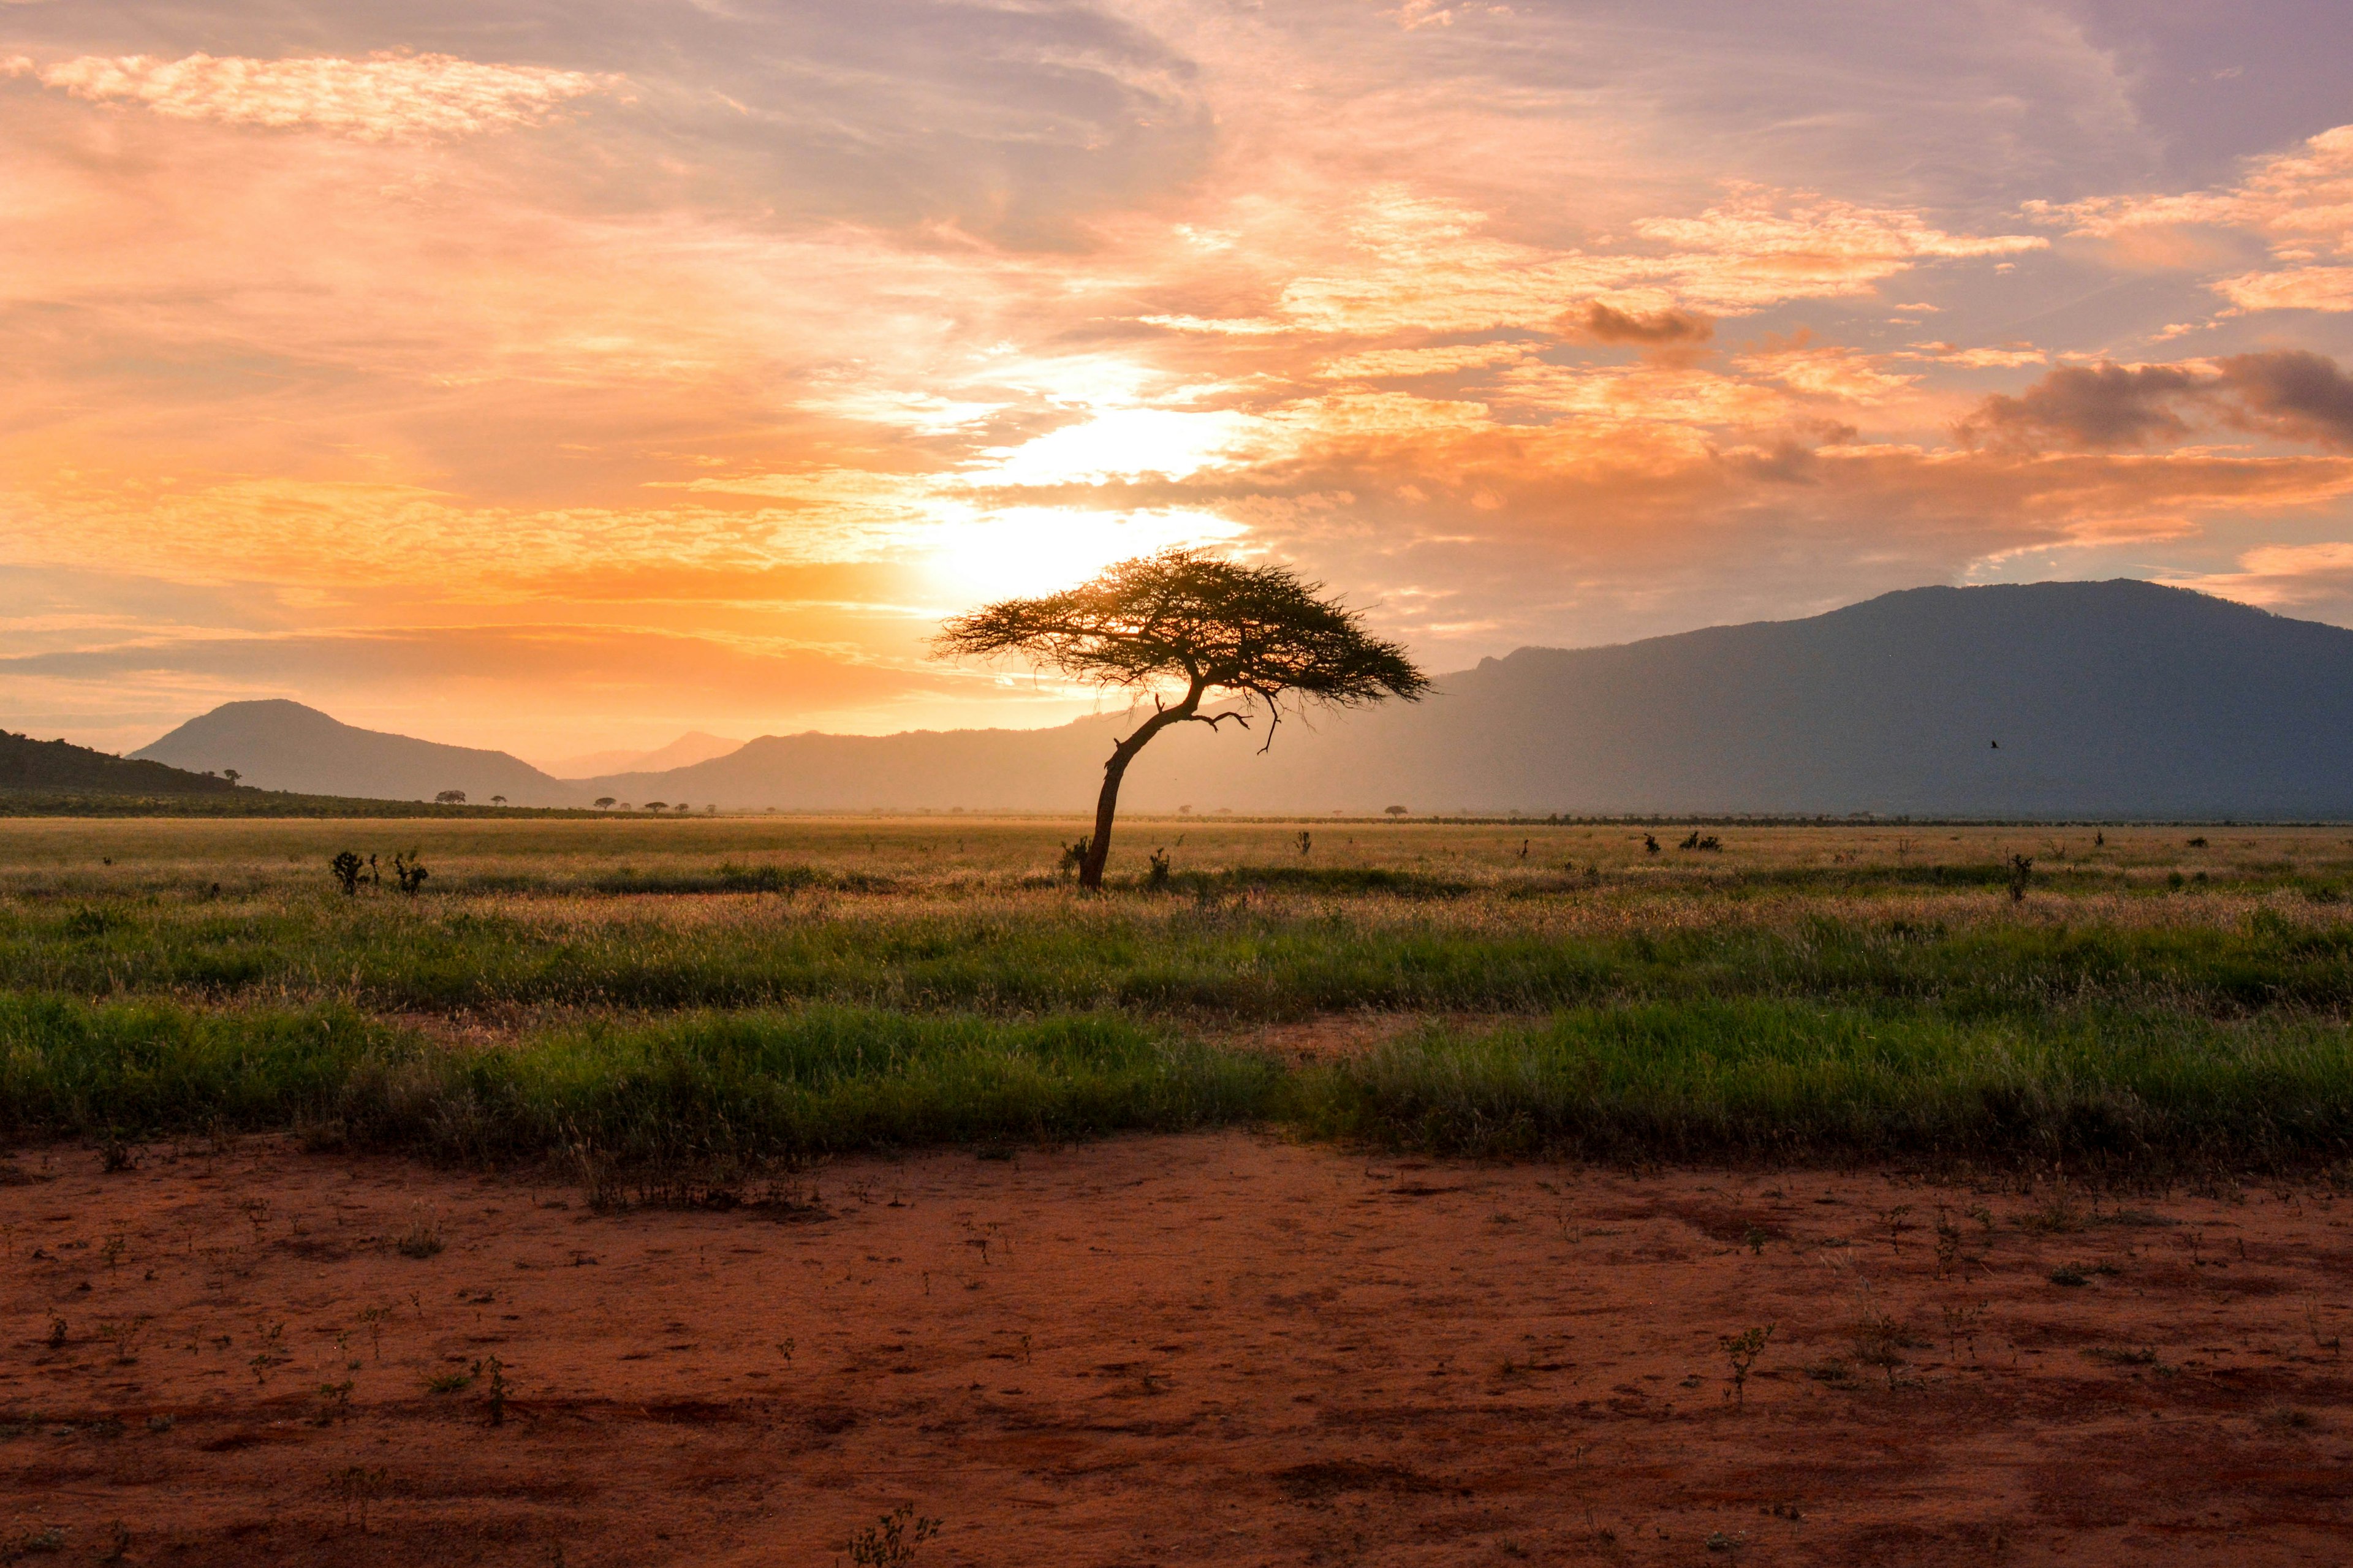 nella foto un albero nella savana alla luce del tramonto - nell'articolo le informazioni utili per un vuaggio in kenya